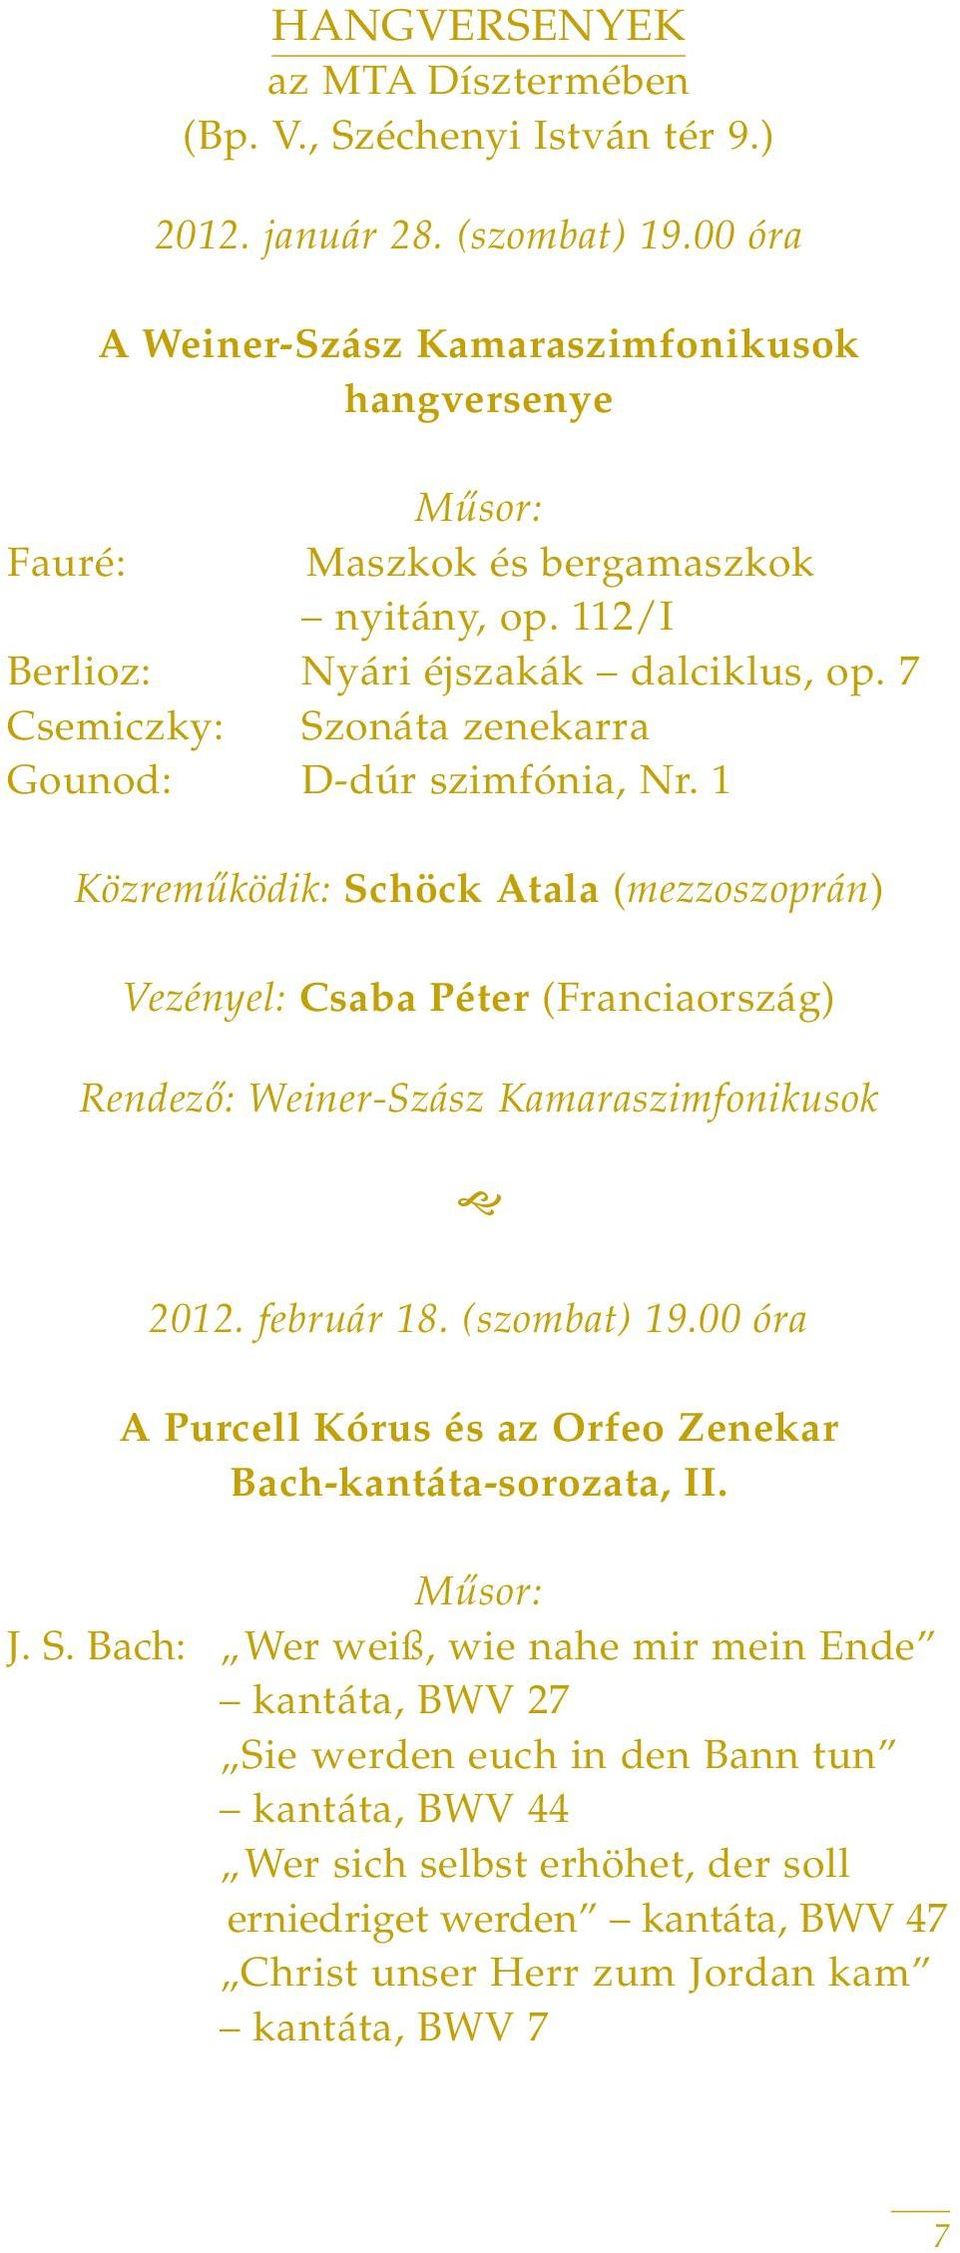 7 Csemiczky: Szonáta zenekarra Gounod: D-dúr szimfónia, Nr. 1 Közremûködik: Schöck Atala (mezzoszoprán) Vezényel: Csaba Péter (Franciaország) Rendezô: Weiner-Szász Kamaraszimfonikusok 2012.